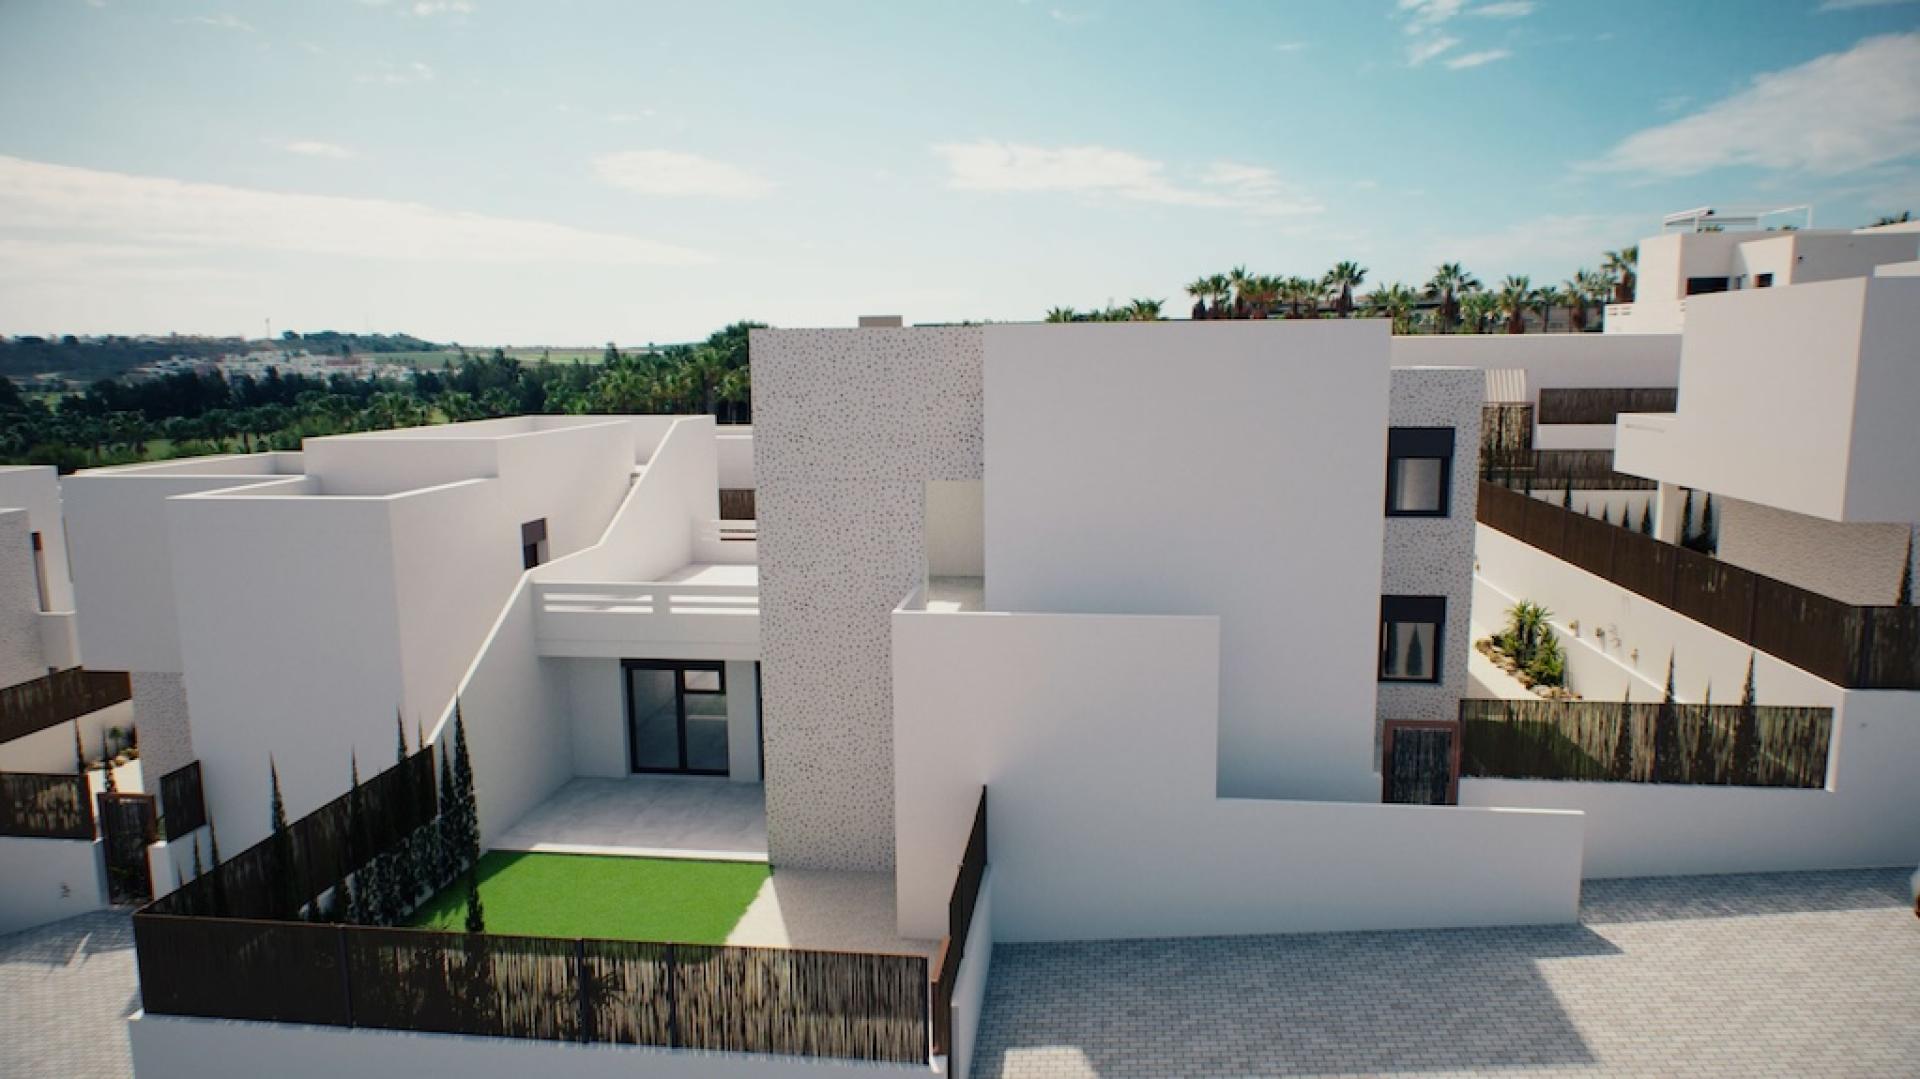 2 !bedroom Appartement met dakterras ! EN Algorfa - Nieuwbouw in Medvilla Spanje